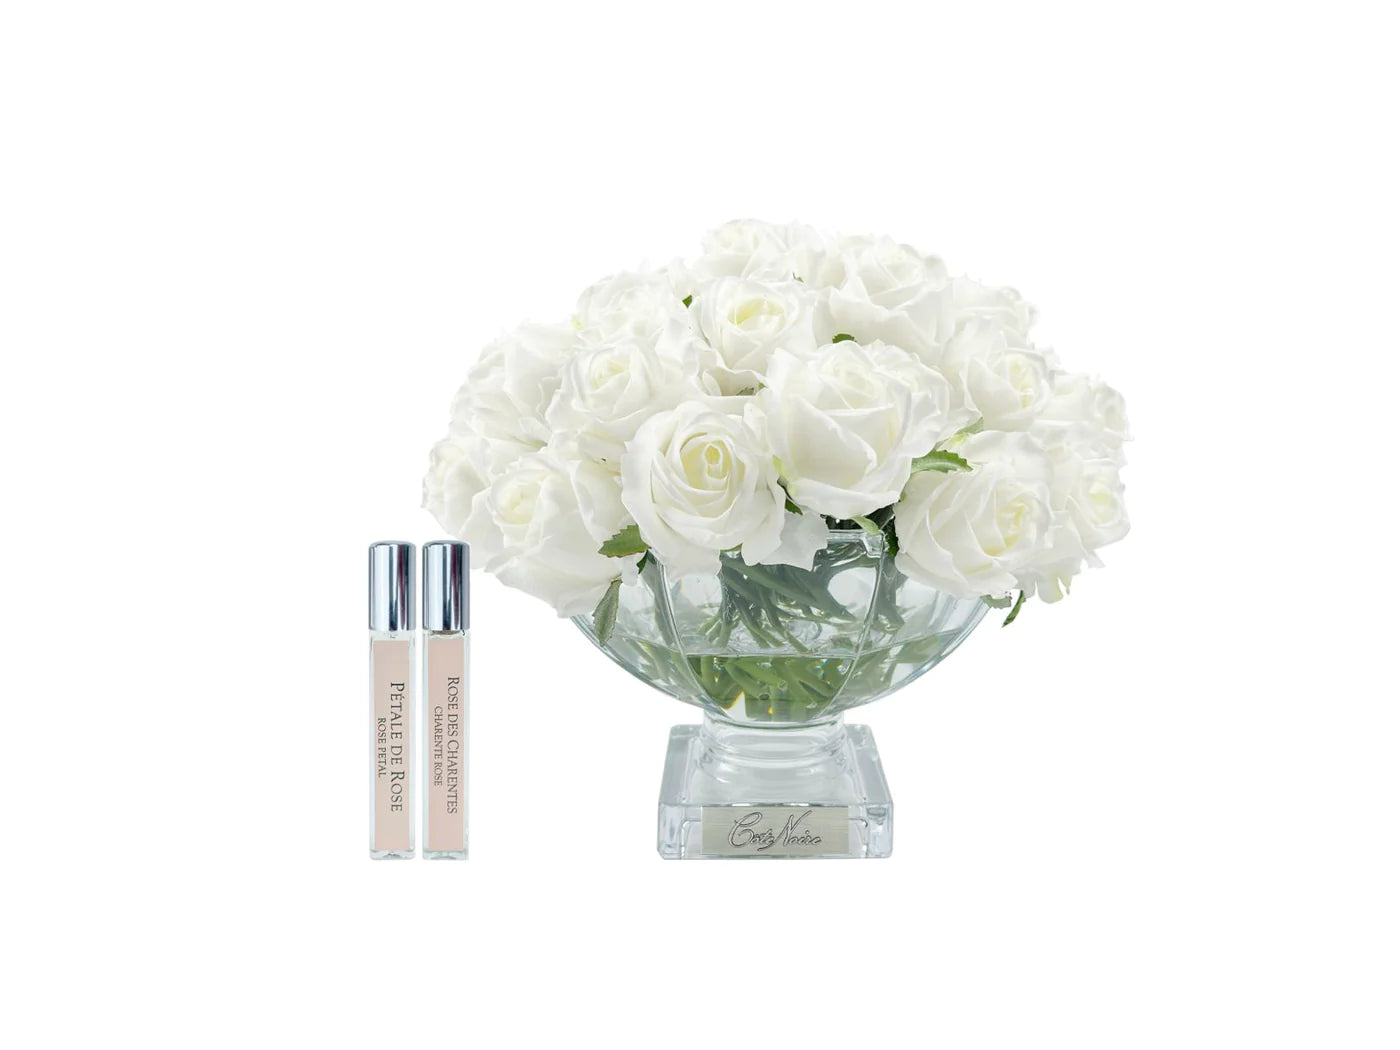 elfenbeinweisse rosen in nobler glasvase neben zwei parfumsprays. weisser hintergrund